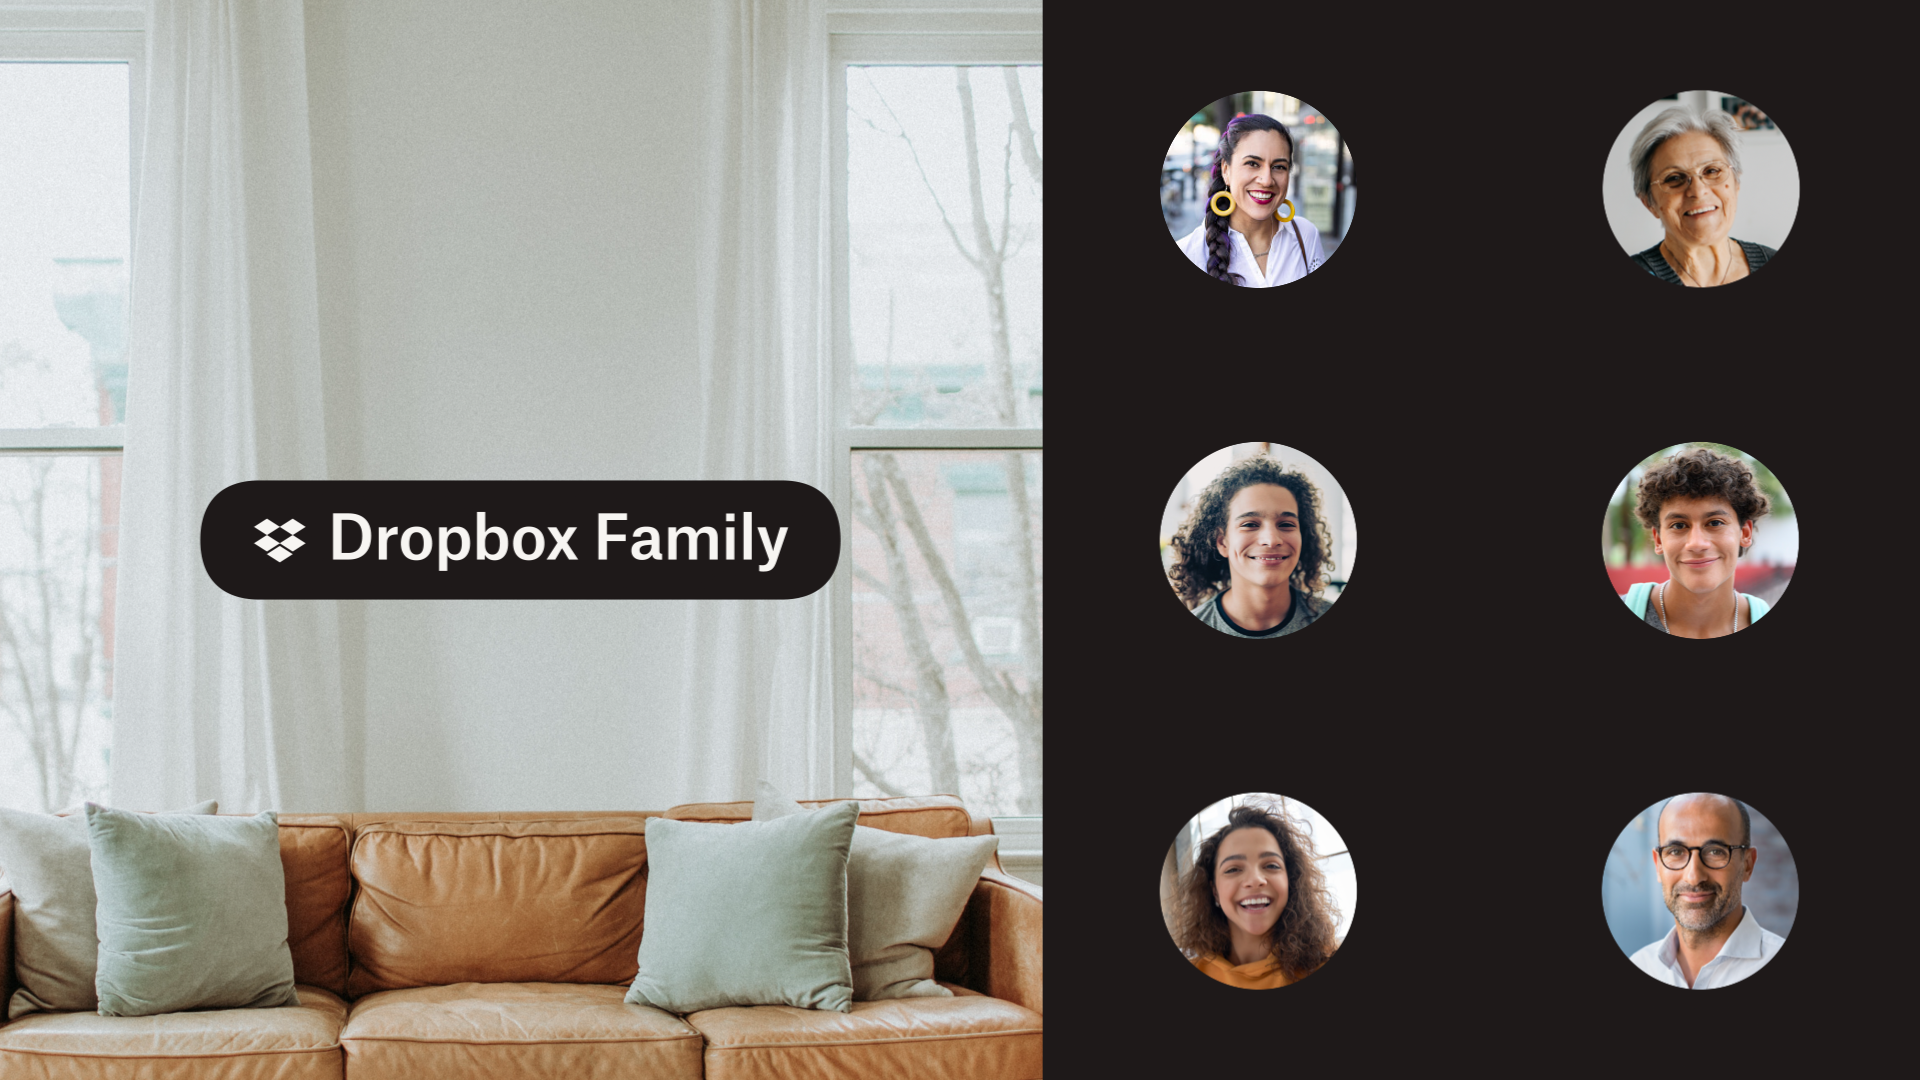 リビング ルームのソファの写真と家族の顔写真を組み合わせた画像